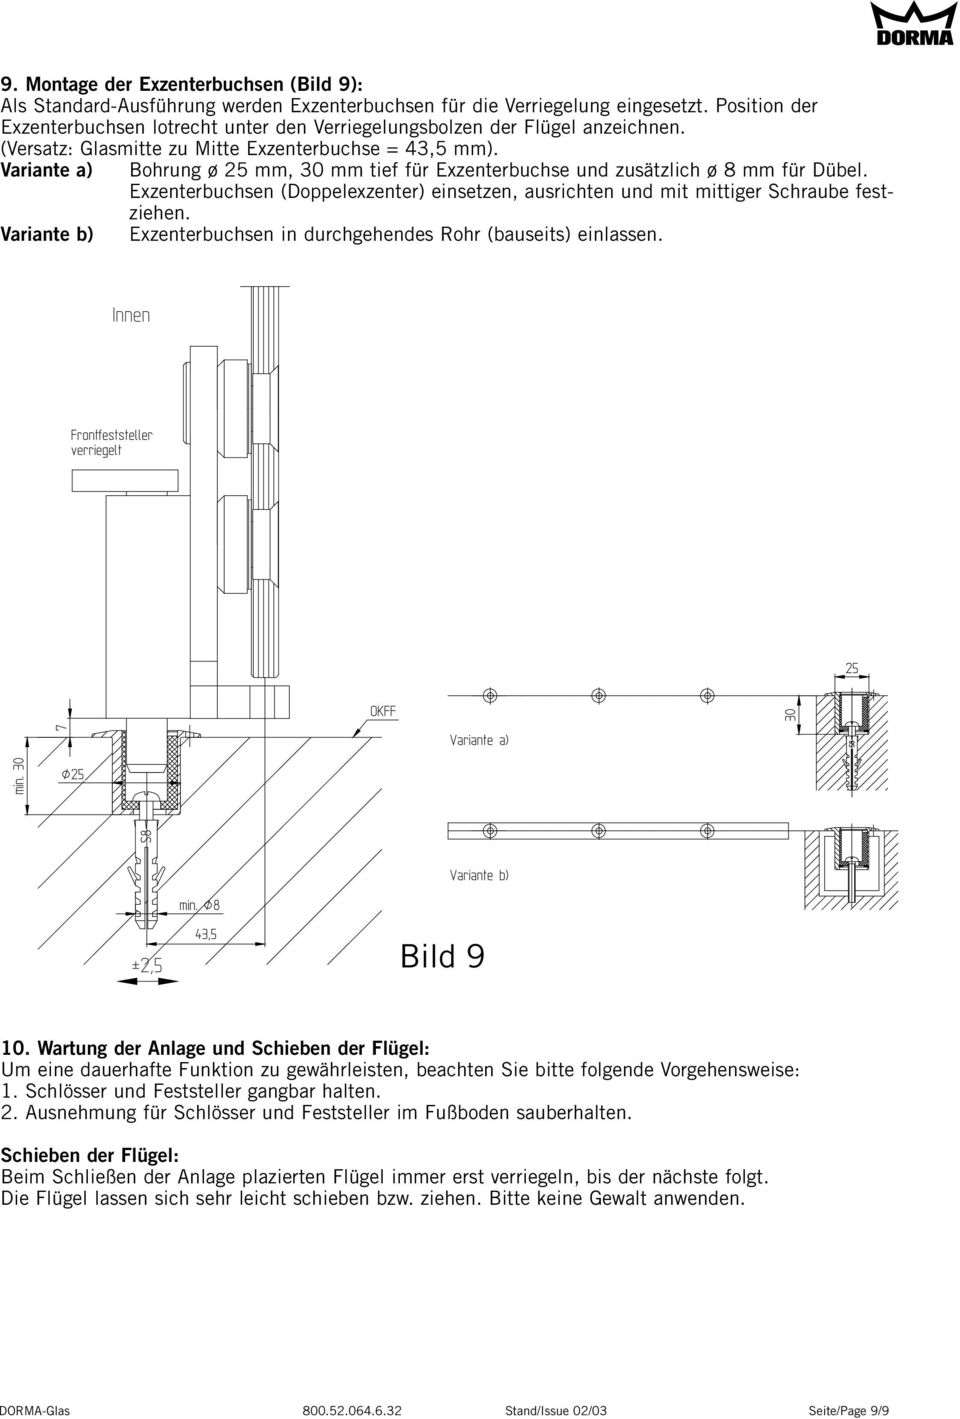 Variante a) Bohrung ø 25 mm, 30 mm tief für Exzenterbuchse und zusätzlich ø 8 mm für Dübel. Exzenterbuchsen (Doppelexzenter) einsetzen, ausrichten und mit mittiger Schraube festziehen.